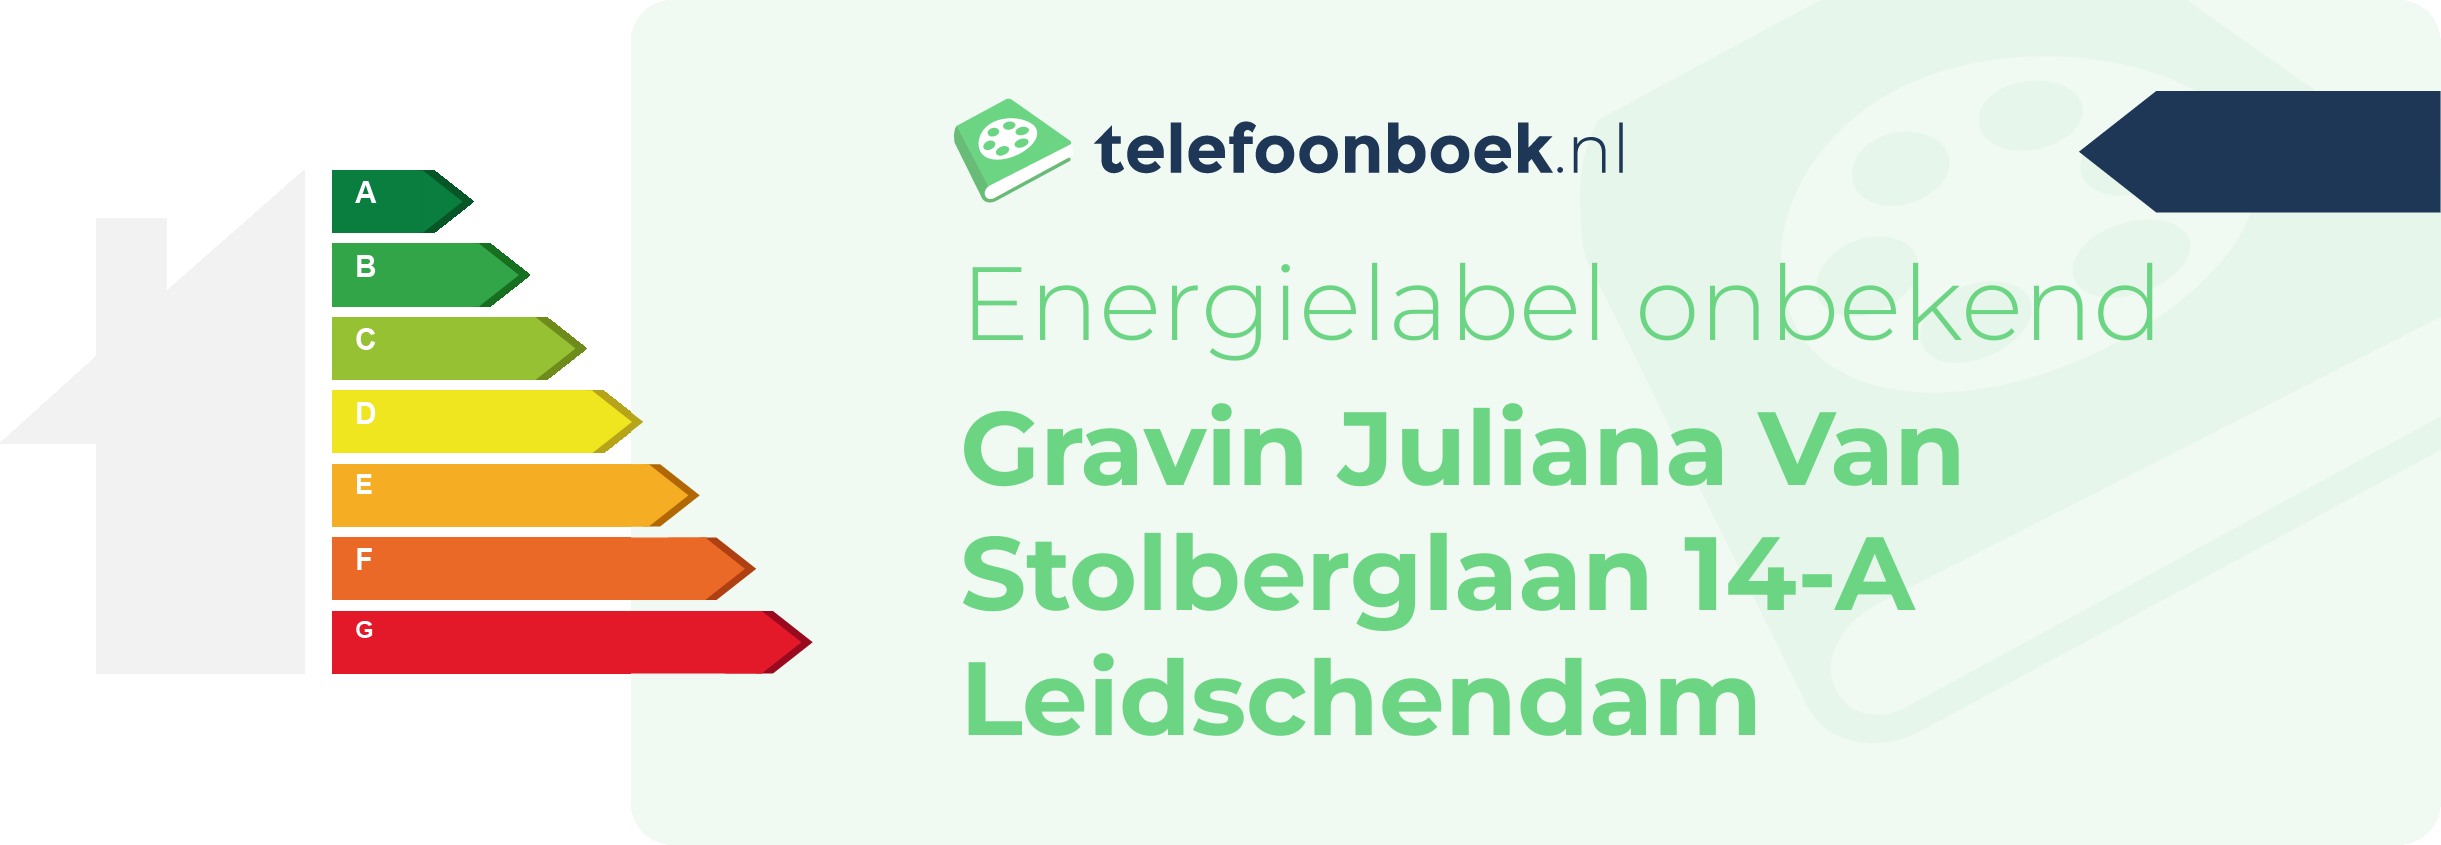 Energielabel Gravin Juliana Van Stolberglaan 14-A Leidschendam